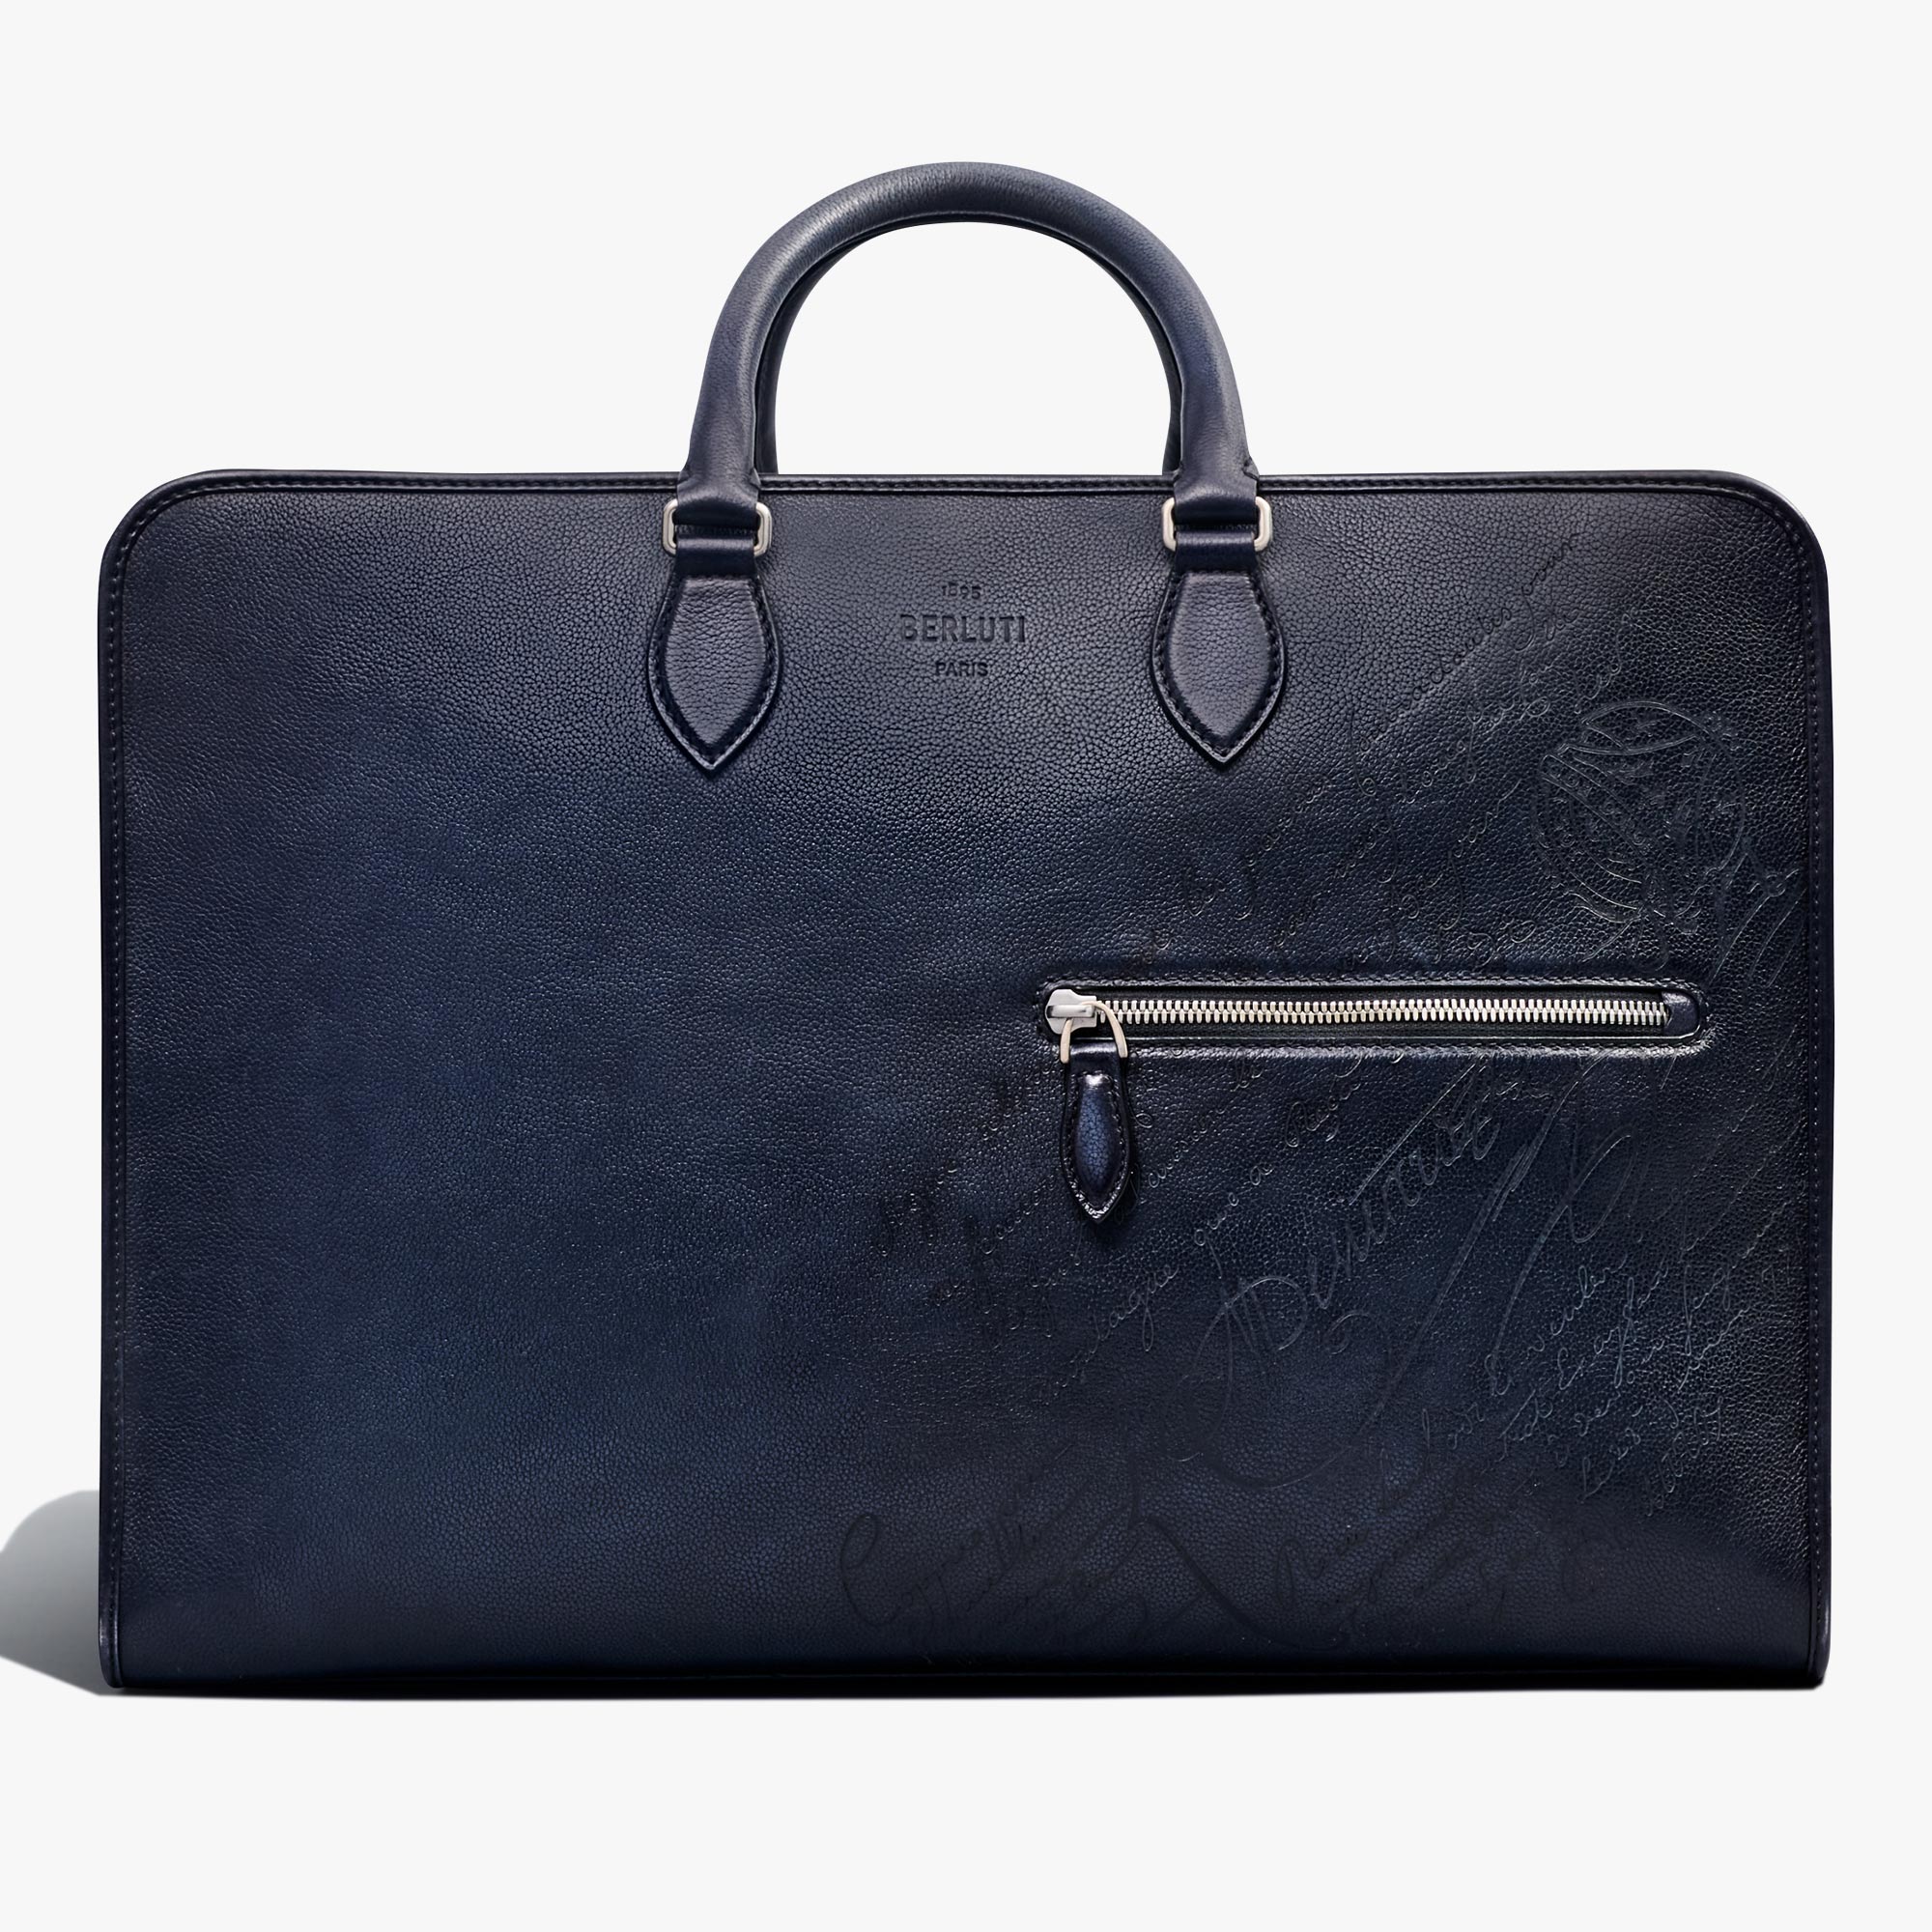 Overnight Scritto Leather Travel Bag, INDIGO DENIM, hi-res